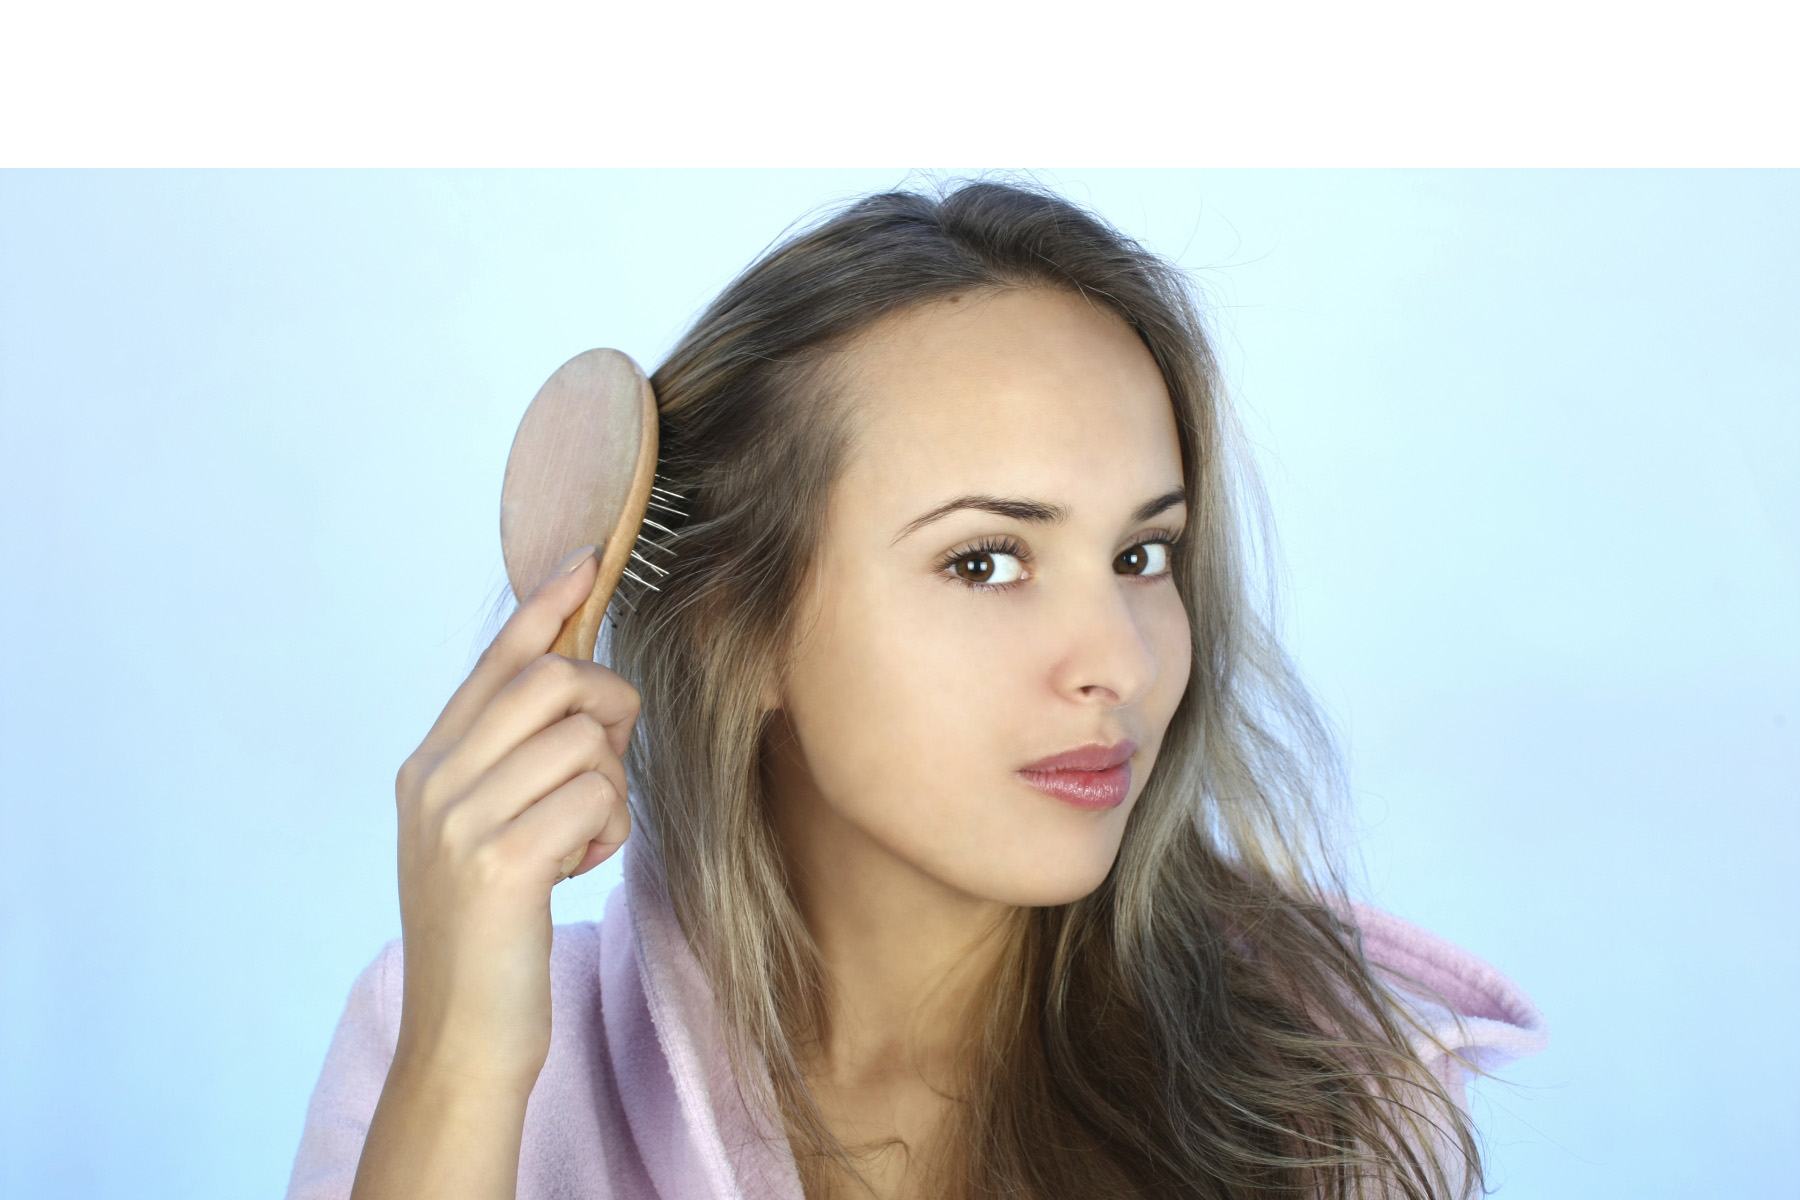 La perdida de cabello excesiva es una de las principales preocupaciones estéticas de las mujeres, por lo que buscan tratamientos que en algunos caso solo la empeoran